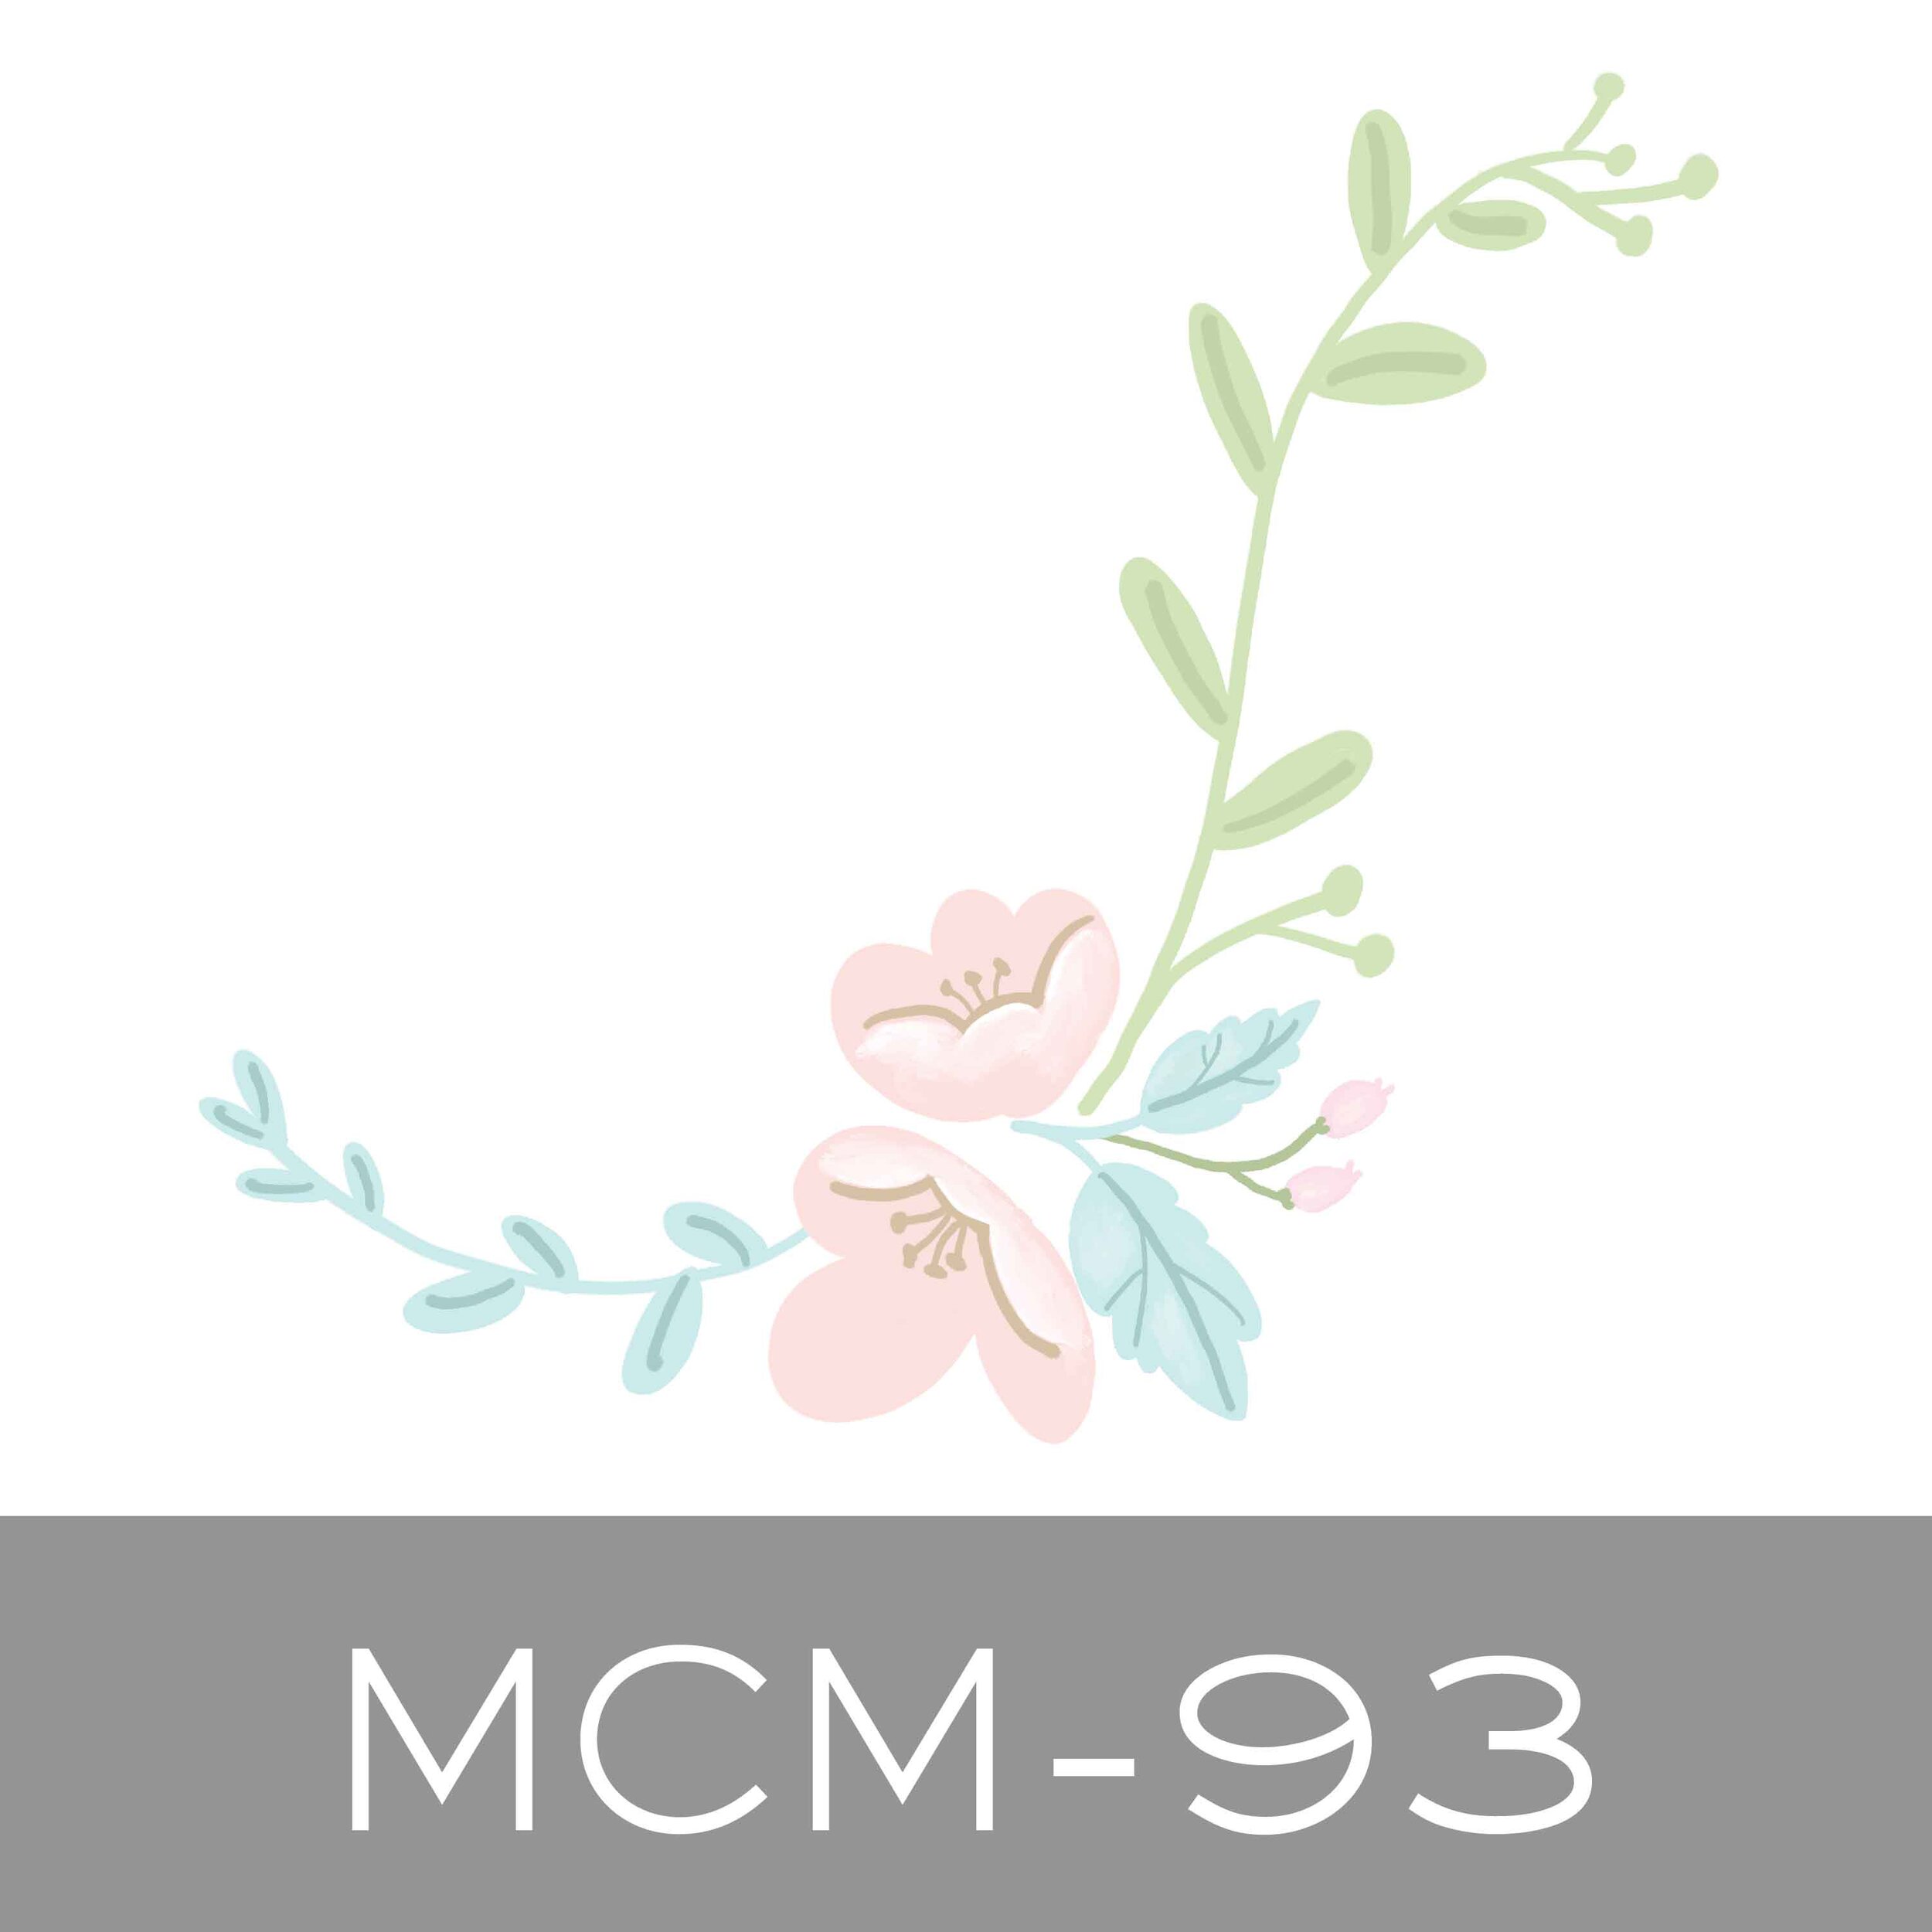 MCM-93.jpg